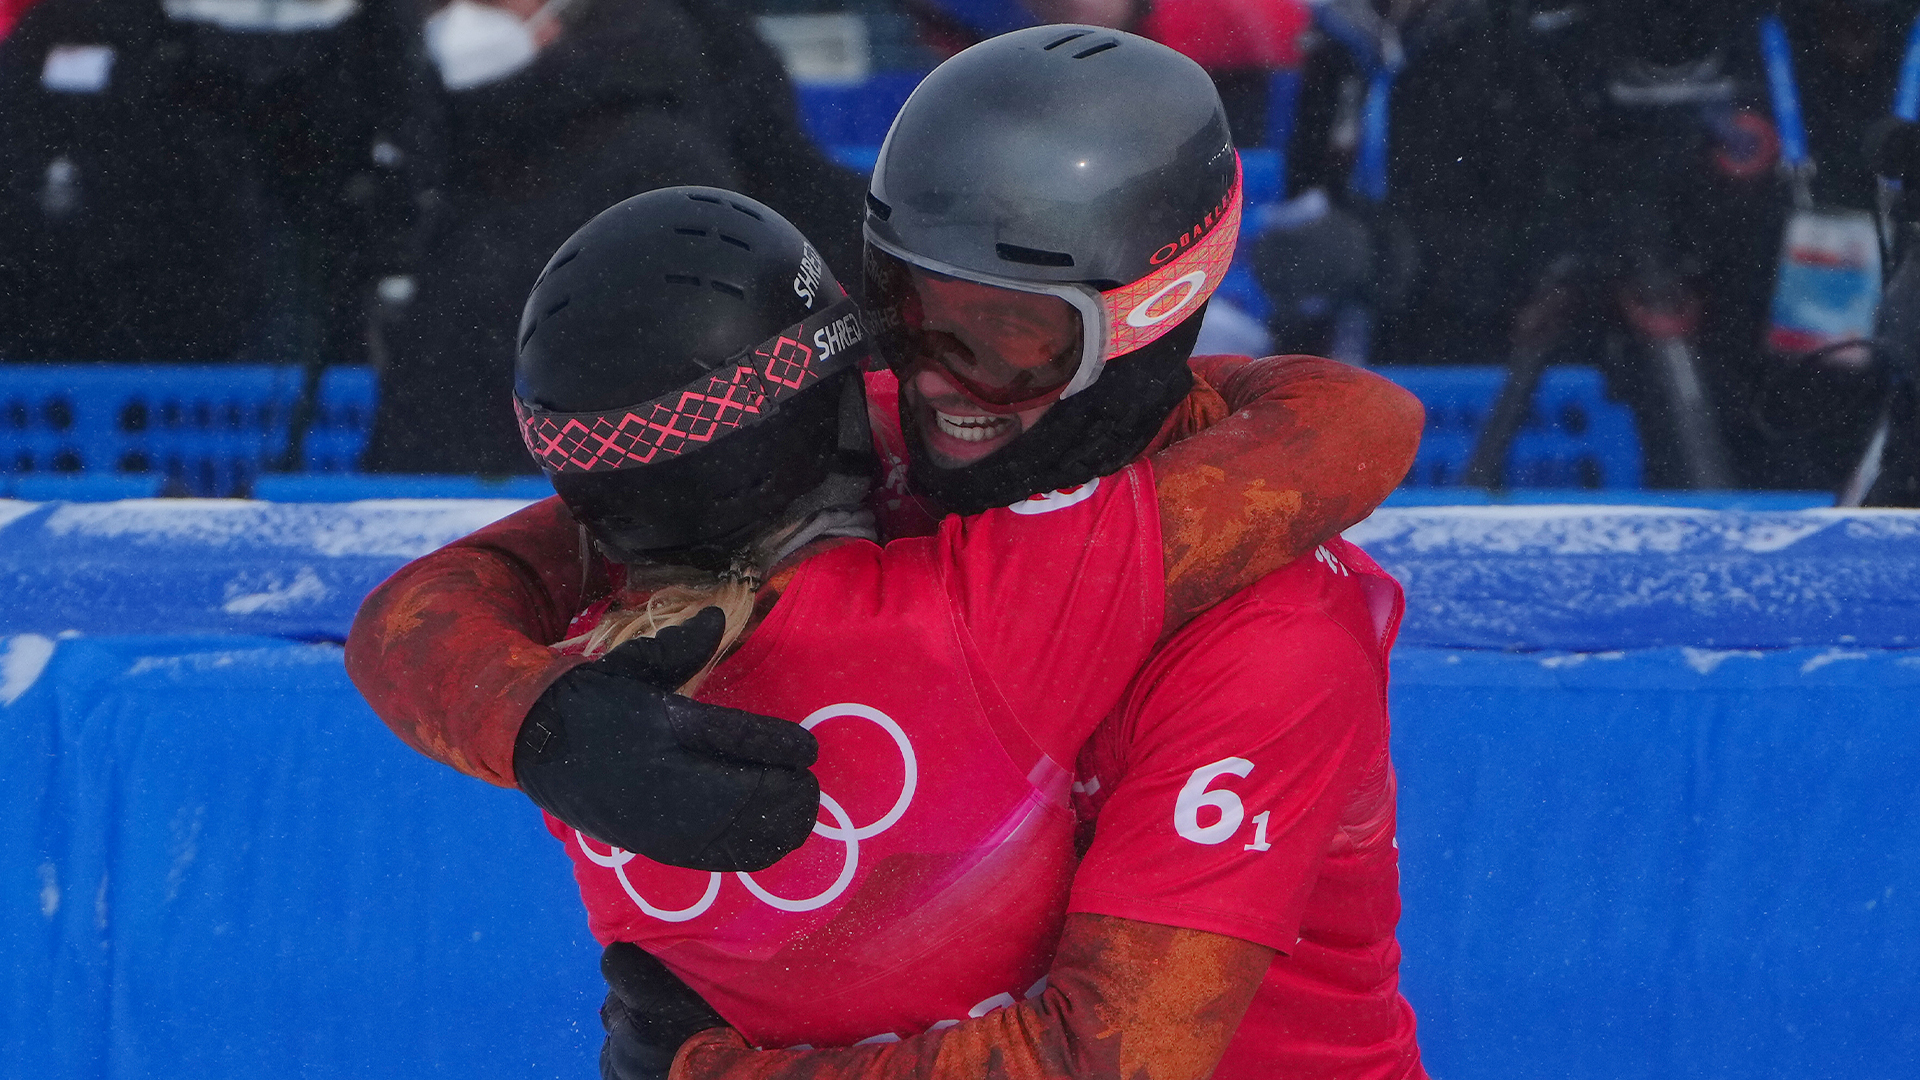 Le duo canadien d'Éliot Grondin et Meryeta O'Dine a remporté la médaille de bronze en snowboard cross mixte par équipe.